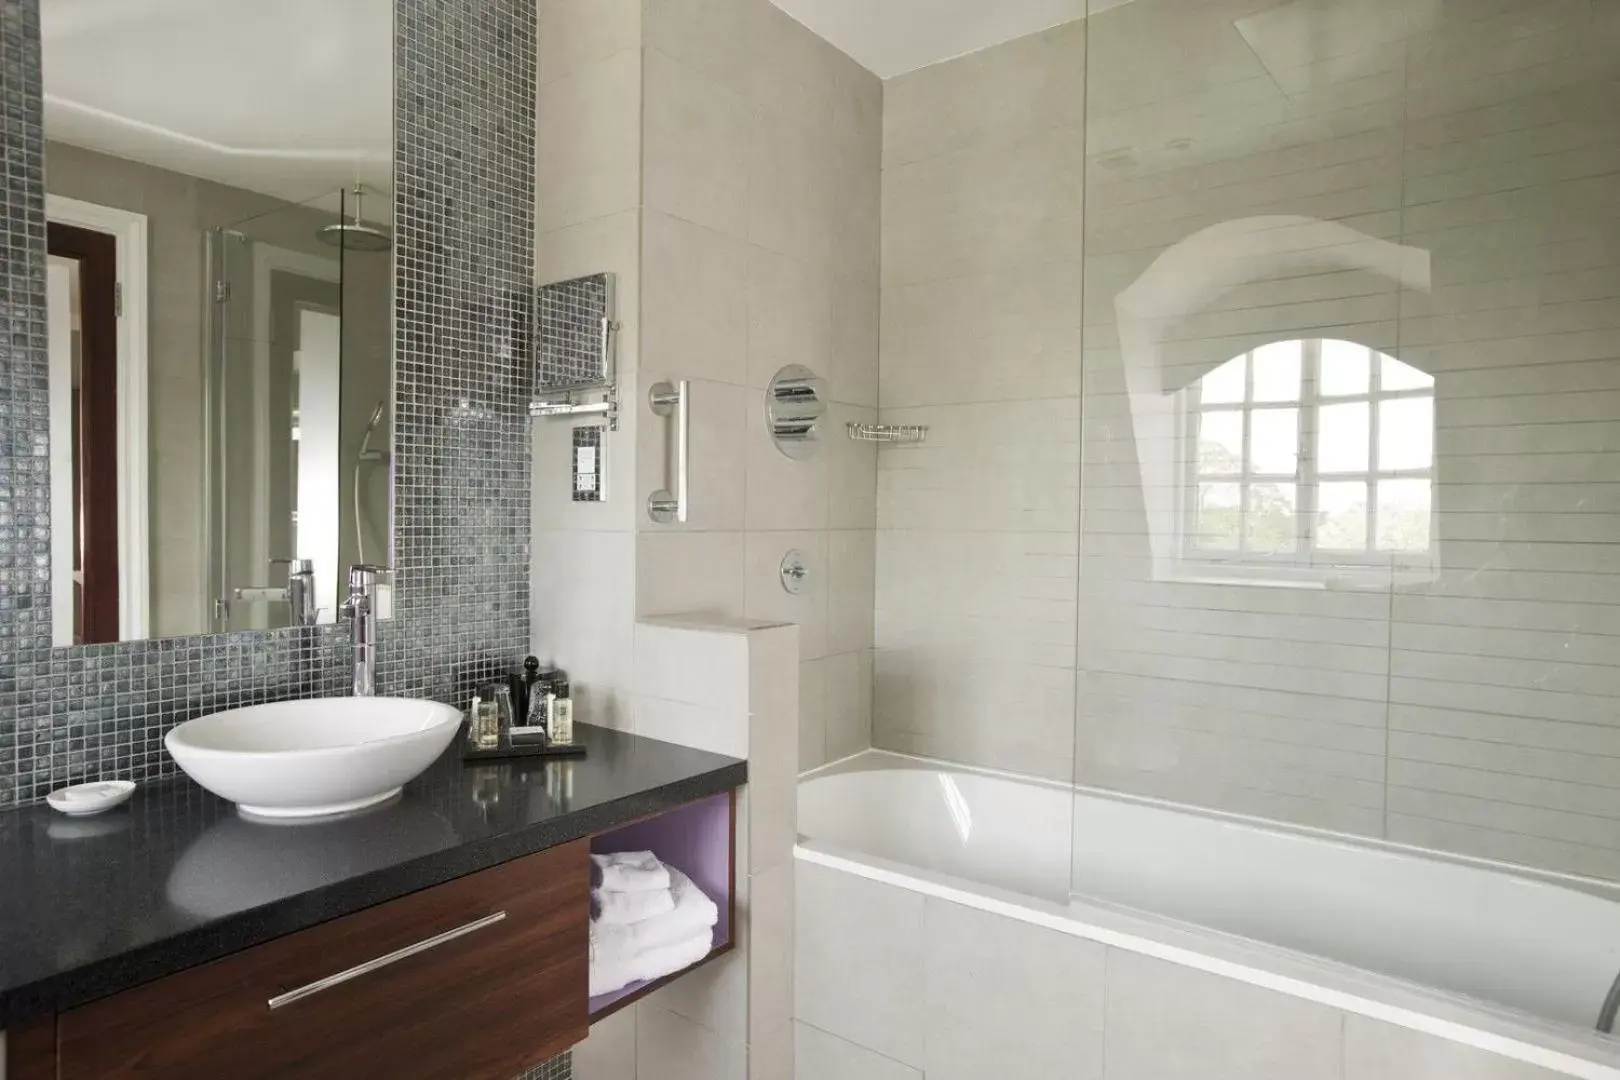 Bathroom in Hotel du Vin Cannizaro House Wimbledon